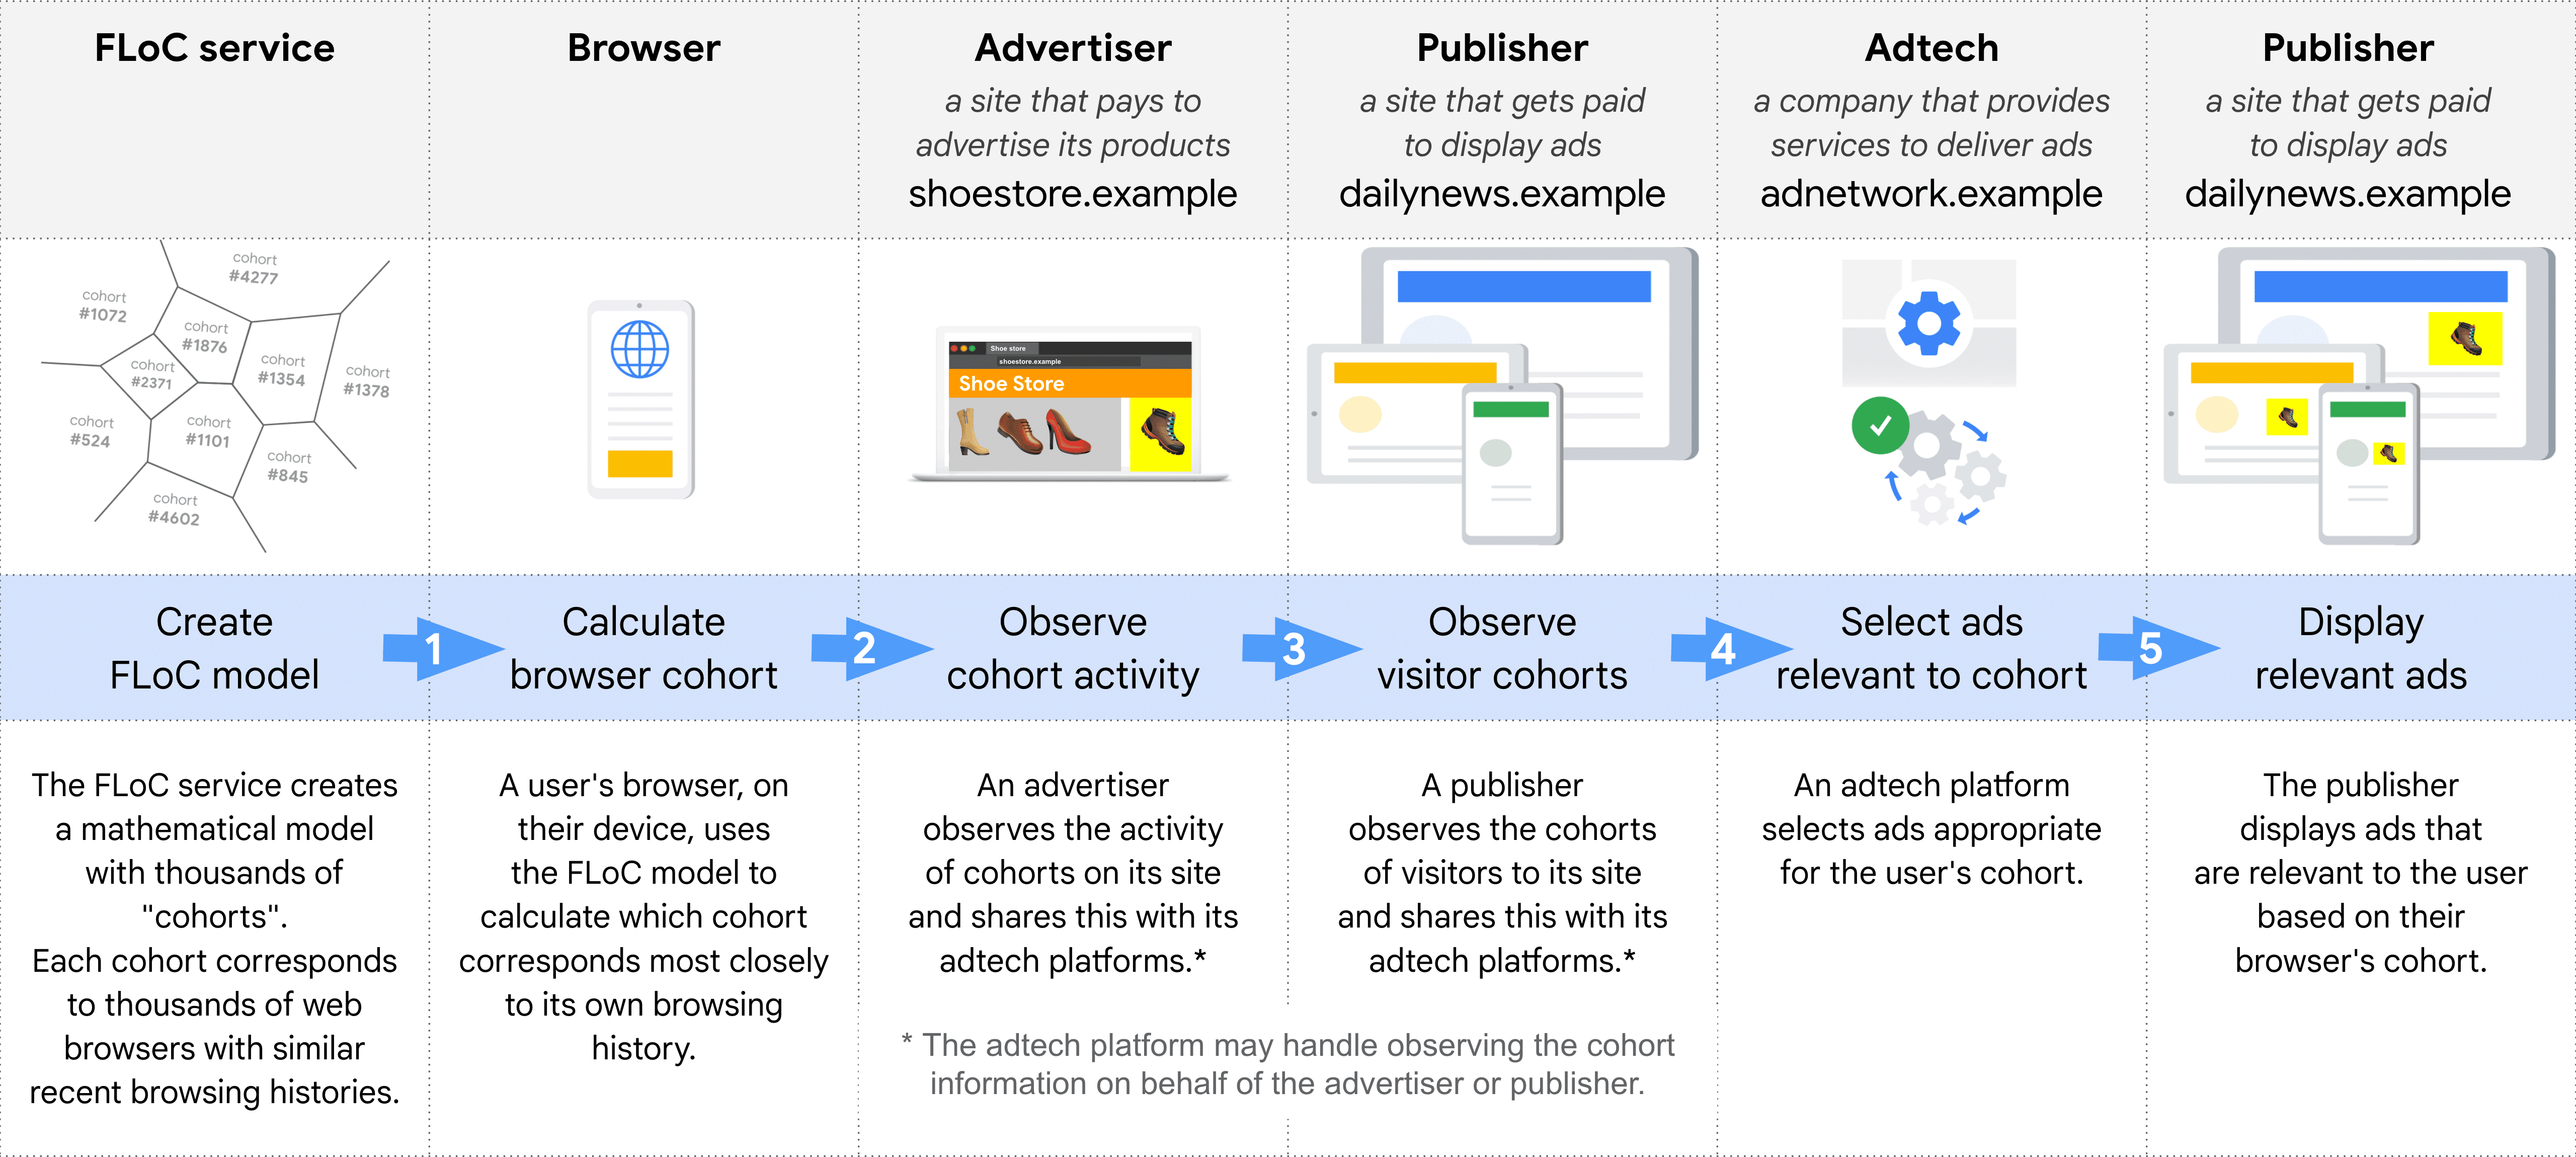 Диаграмма, показывающая, шаг за шагом, различные роли в выборе и показе релевантной рекламы с помощью FLoC: служба FLoC, браузер, рекламодатели, издатель (для наблюдения за когортами), рекламная технология, издатель (для показа рекламы).